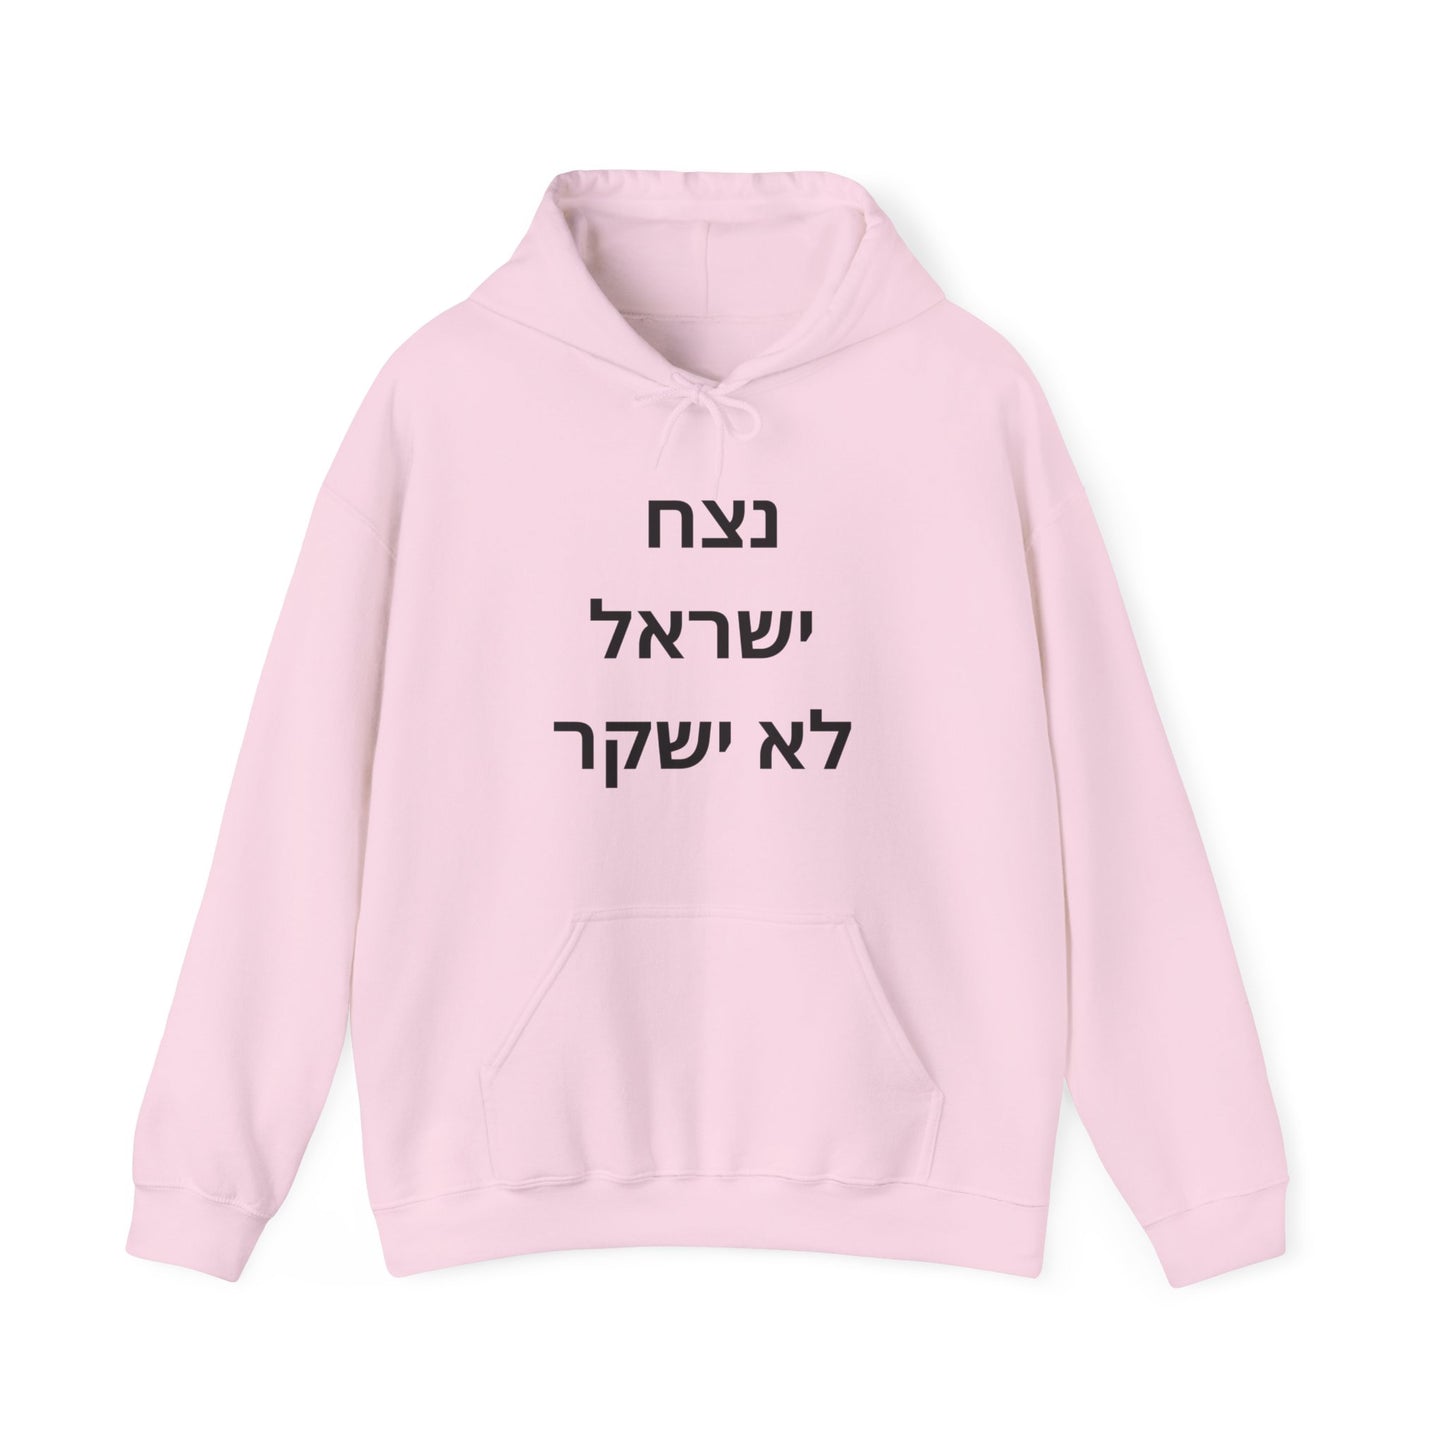 Adult נצח ישראל לא ישקר Hooded Sweatshirt